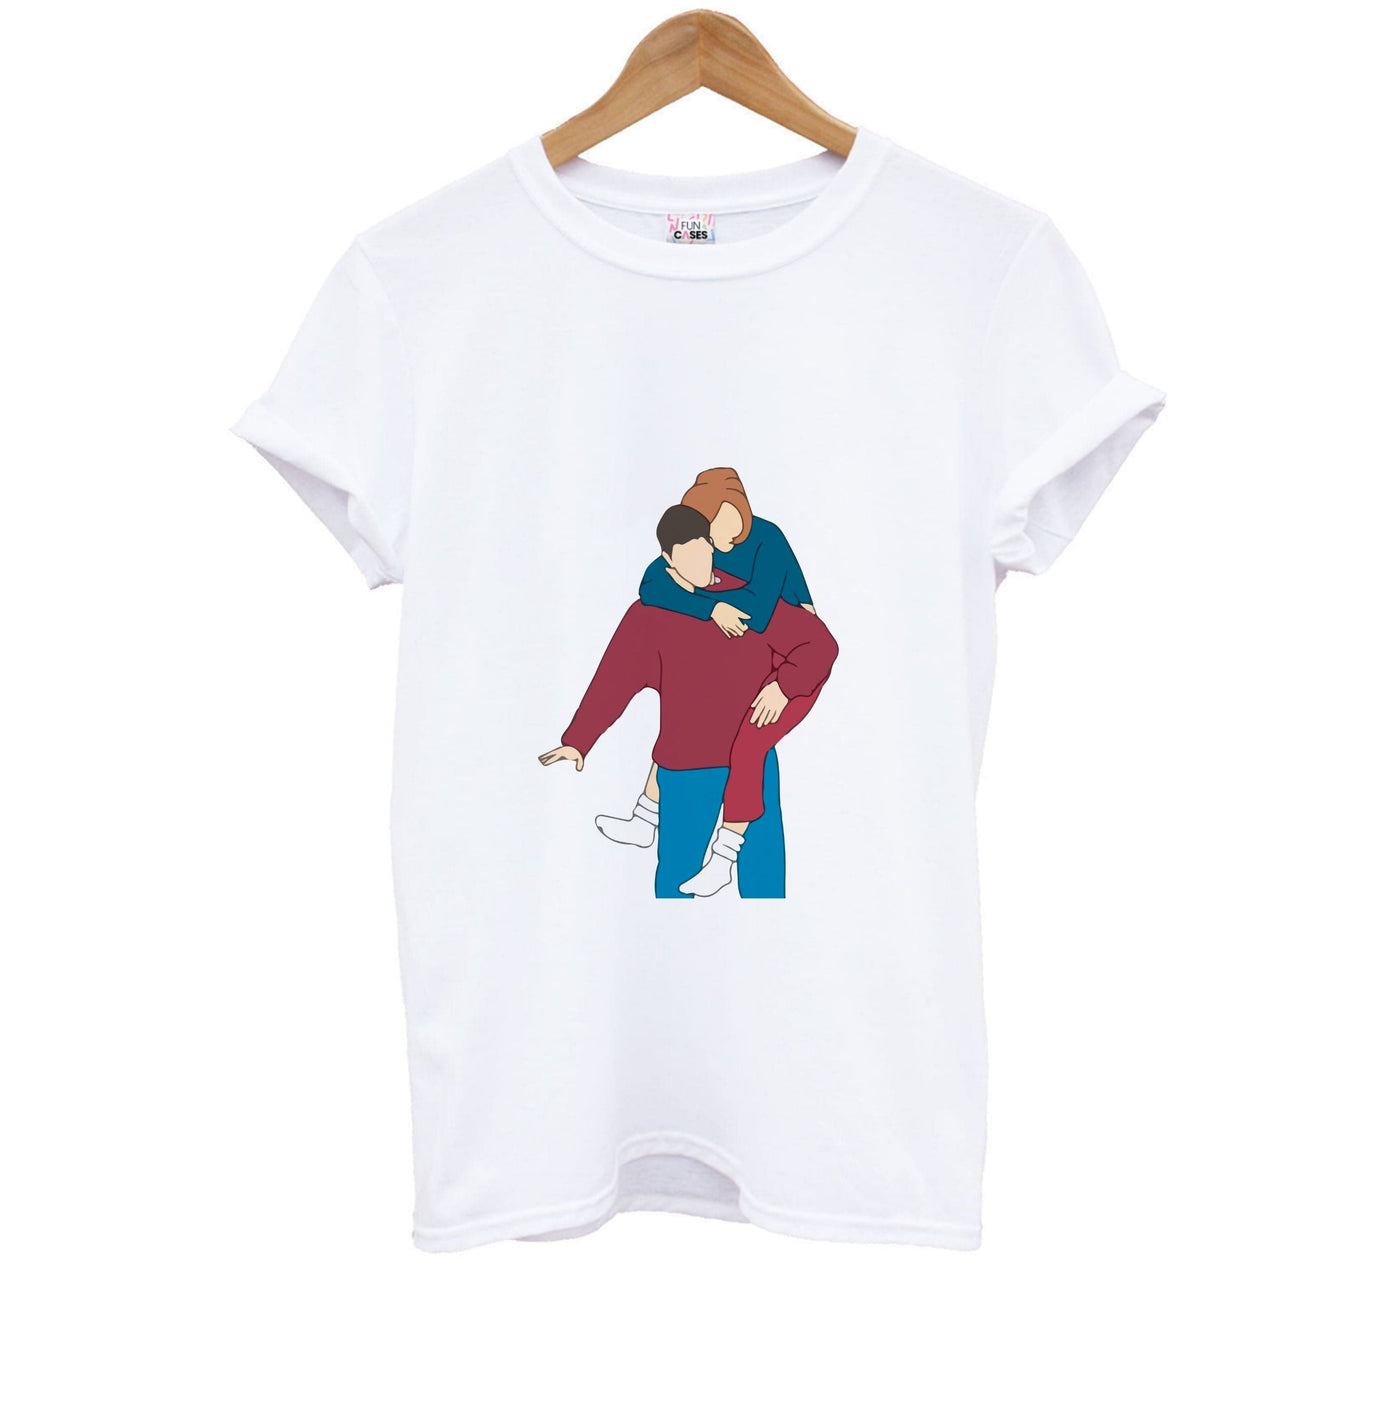 Ross And Rachel - Friends Kids T-Shirt